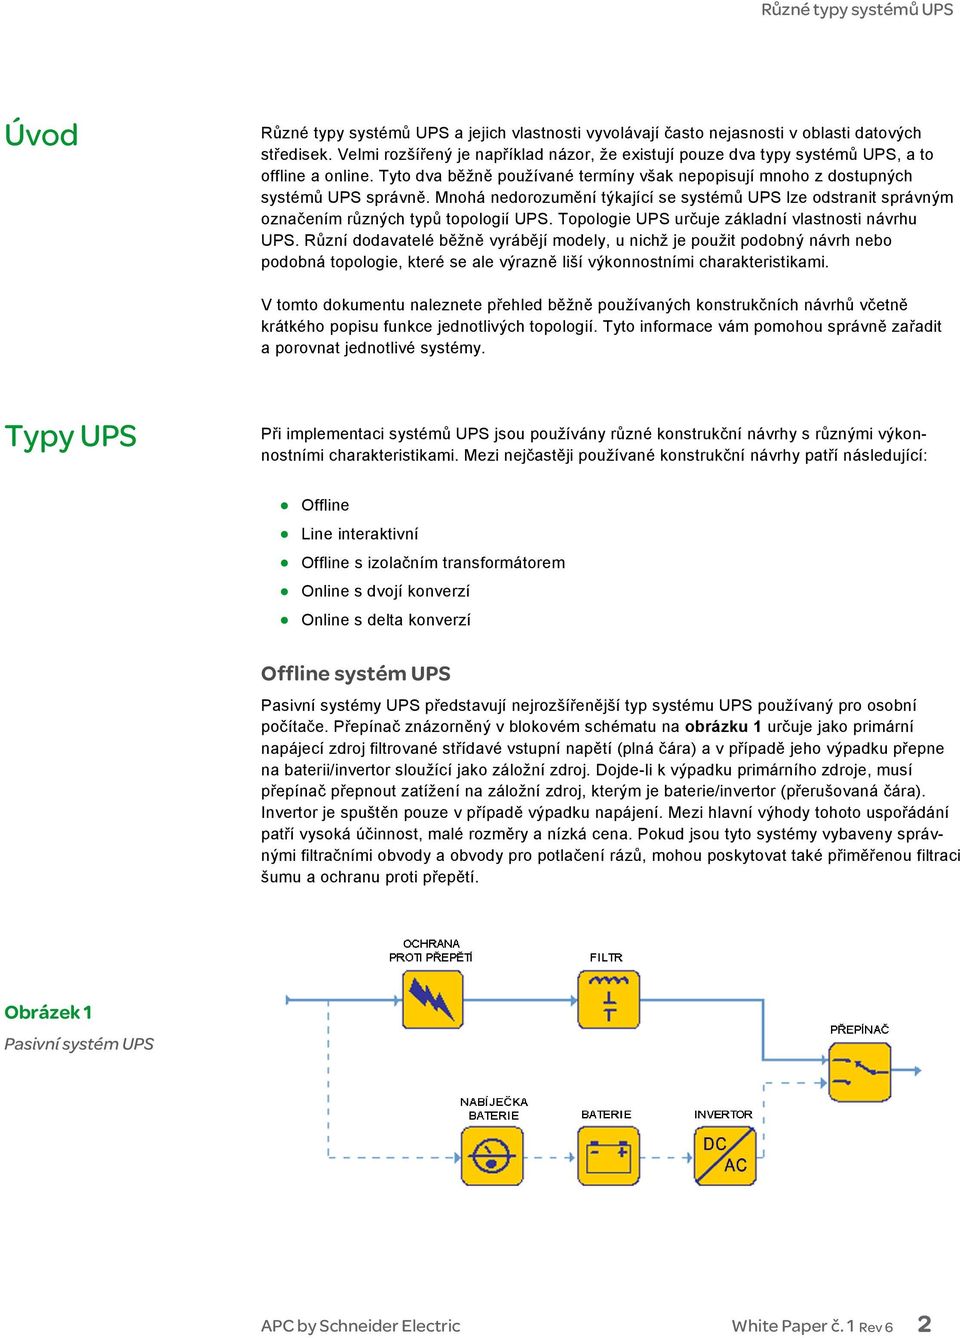 Mnohá nedorozumění týkající se systémů UPS lze odstranit správným označením různých typů topologií UPS. Topologie UPS určuje základní vlastnosti návrhu UPS.